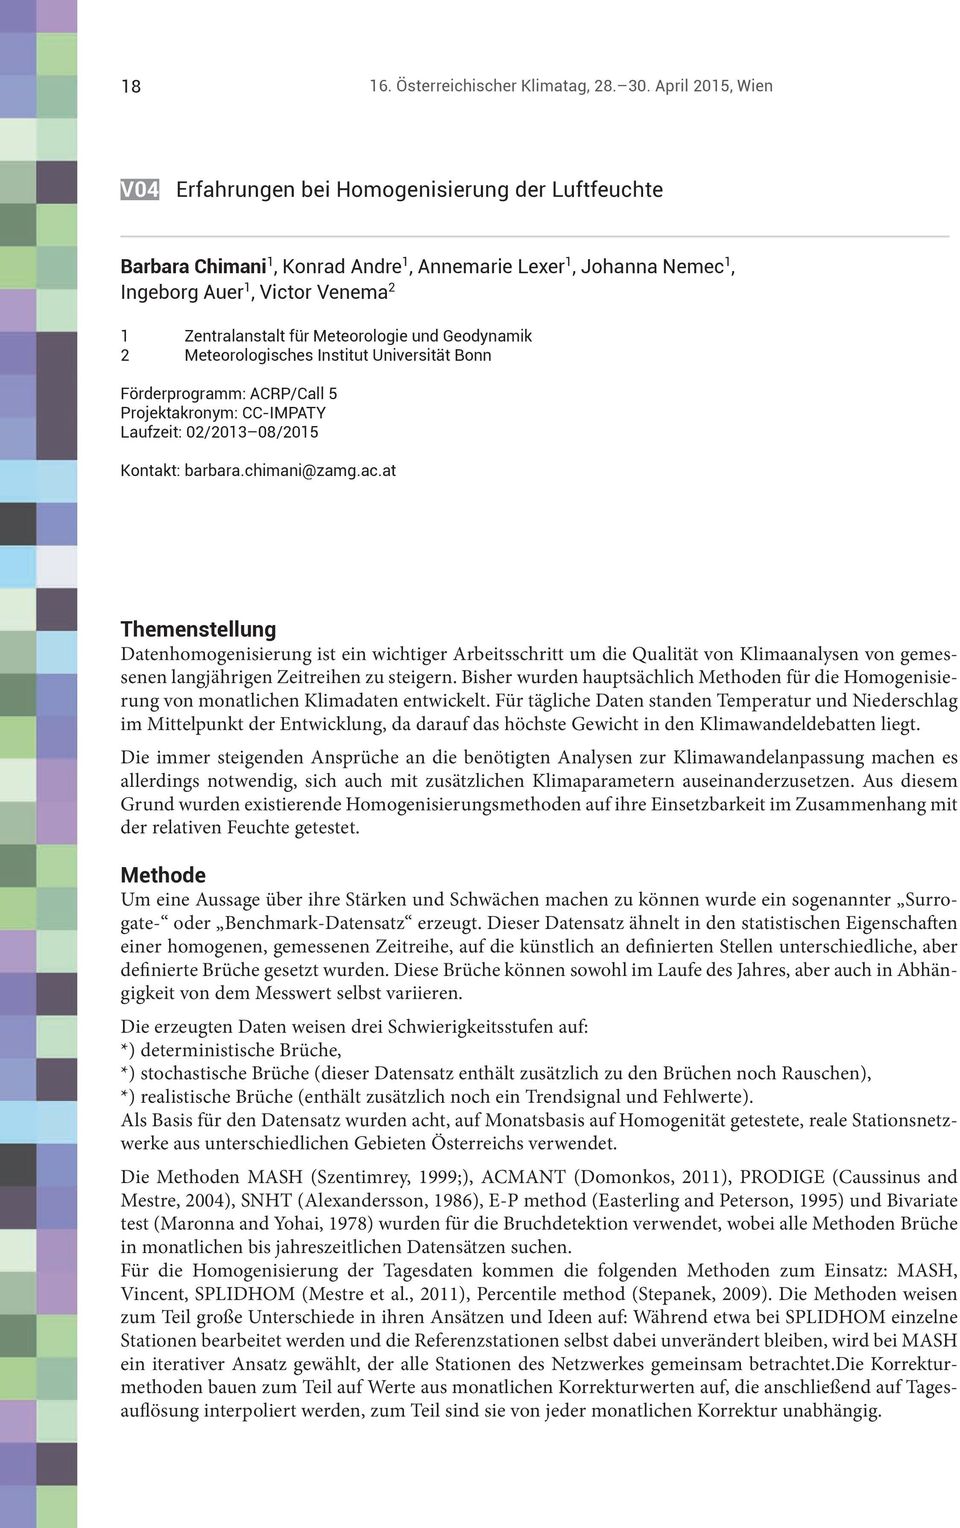 Meteorologie und Geodynamik 2 Meteorologisches Institut Universität Bonn Förderprogramm: ACRP/Call 5 Projektakronym: CC-IMPATY Laufzeit: 02/2013 08/2015 Kontakt: barbara.chimani@zamg.ac.